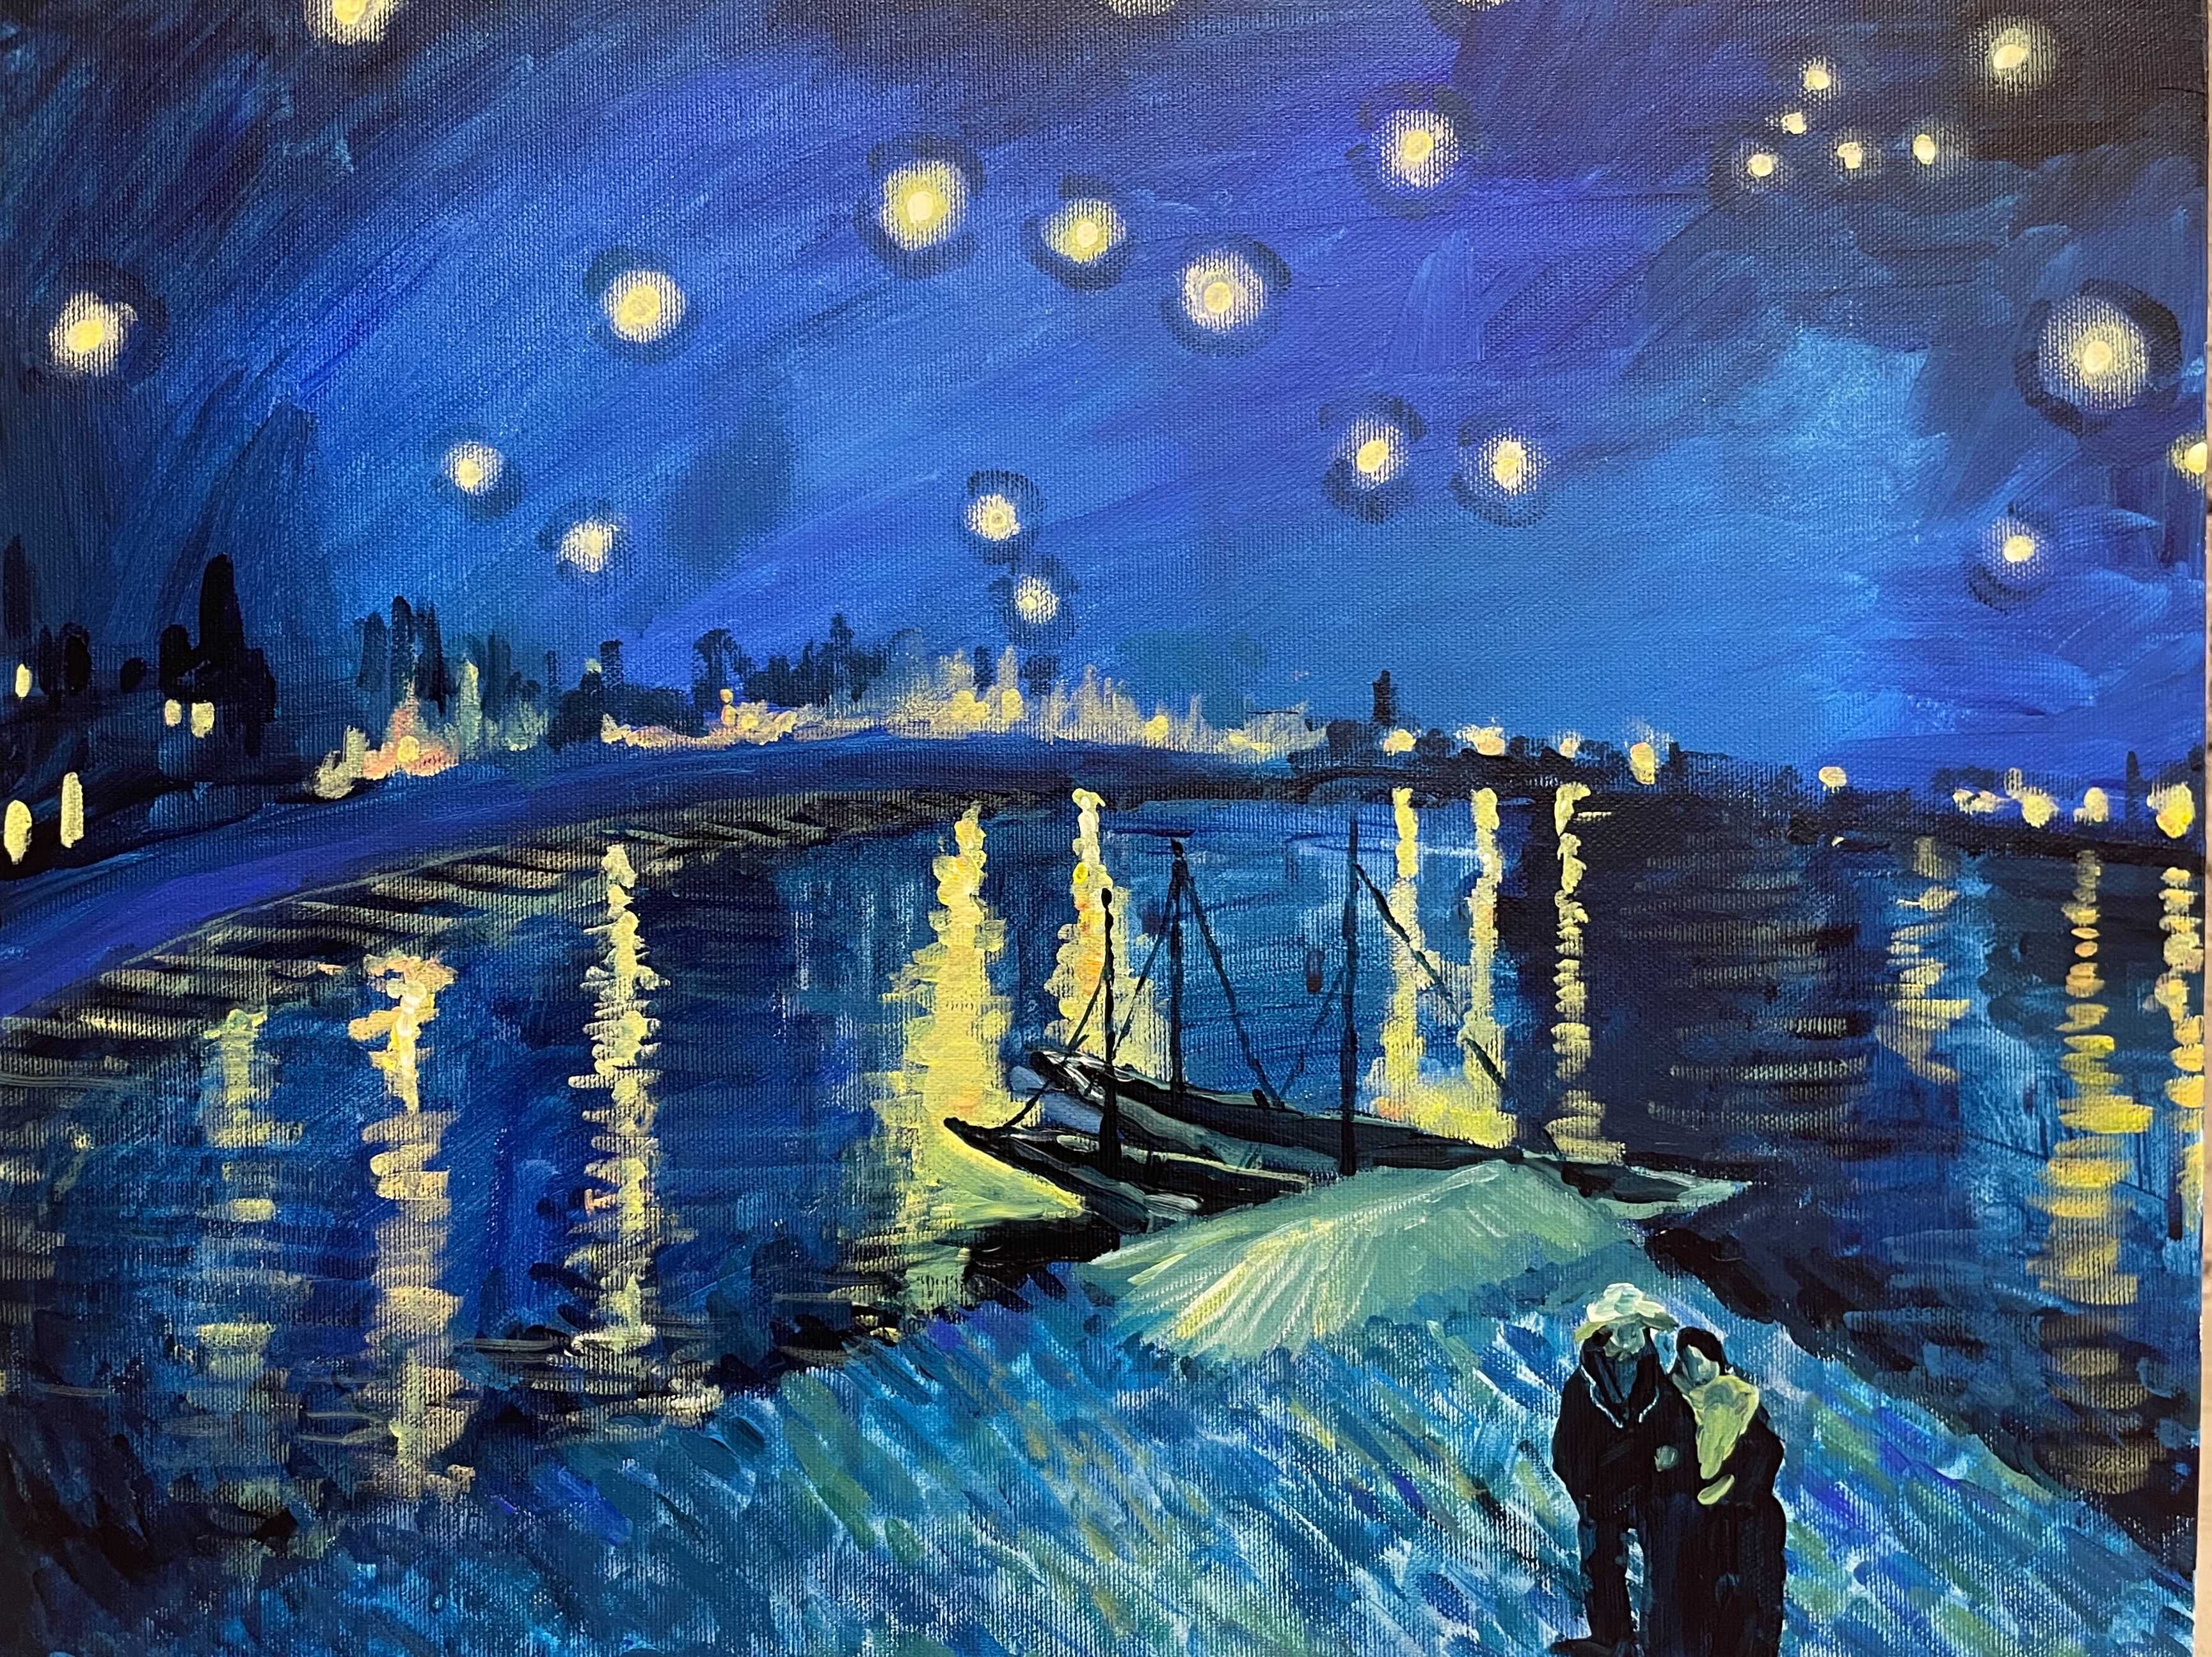 【日本橋】3月23日 (土) 14:00-17:00 | フィンセント・ファン・ゴッホ | 星降る夜 (Starry Night Over the Rhone" by Vincent van Gogh at Nihon-bashi)